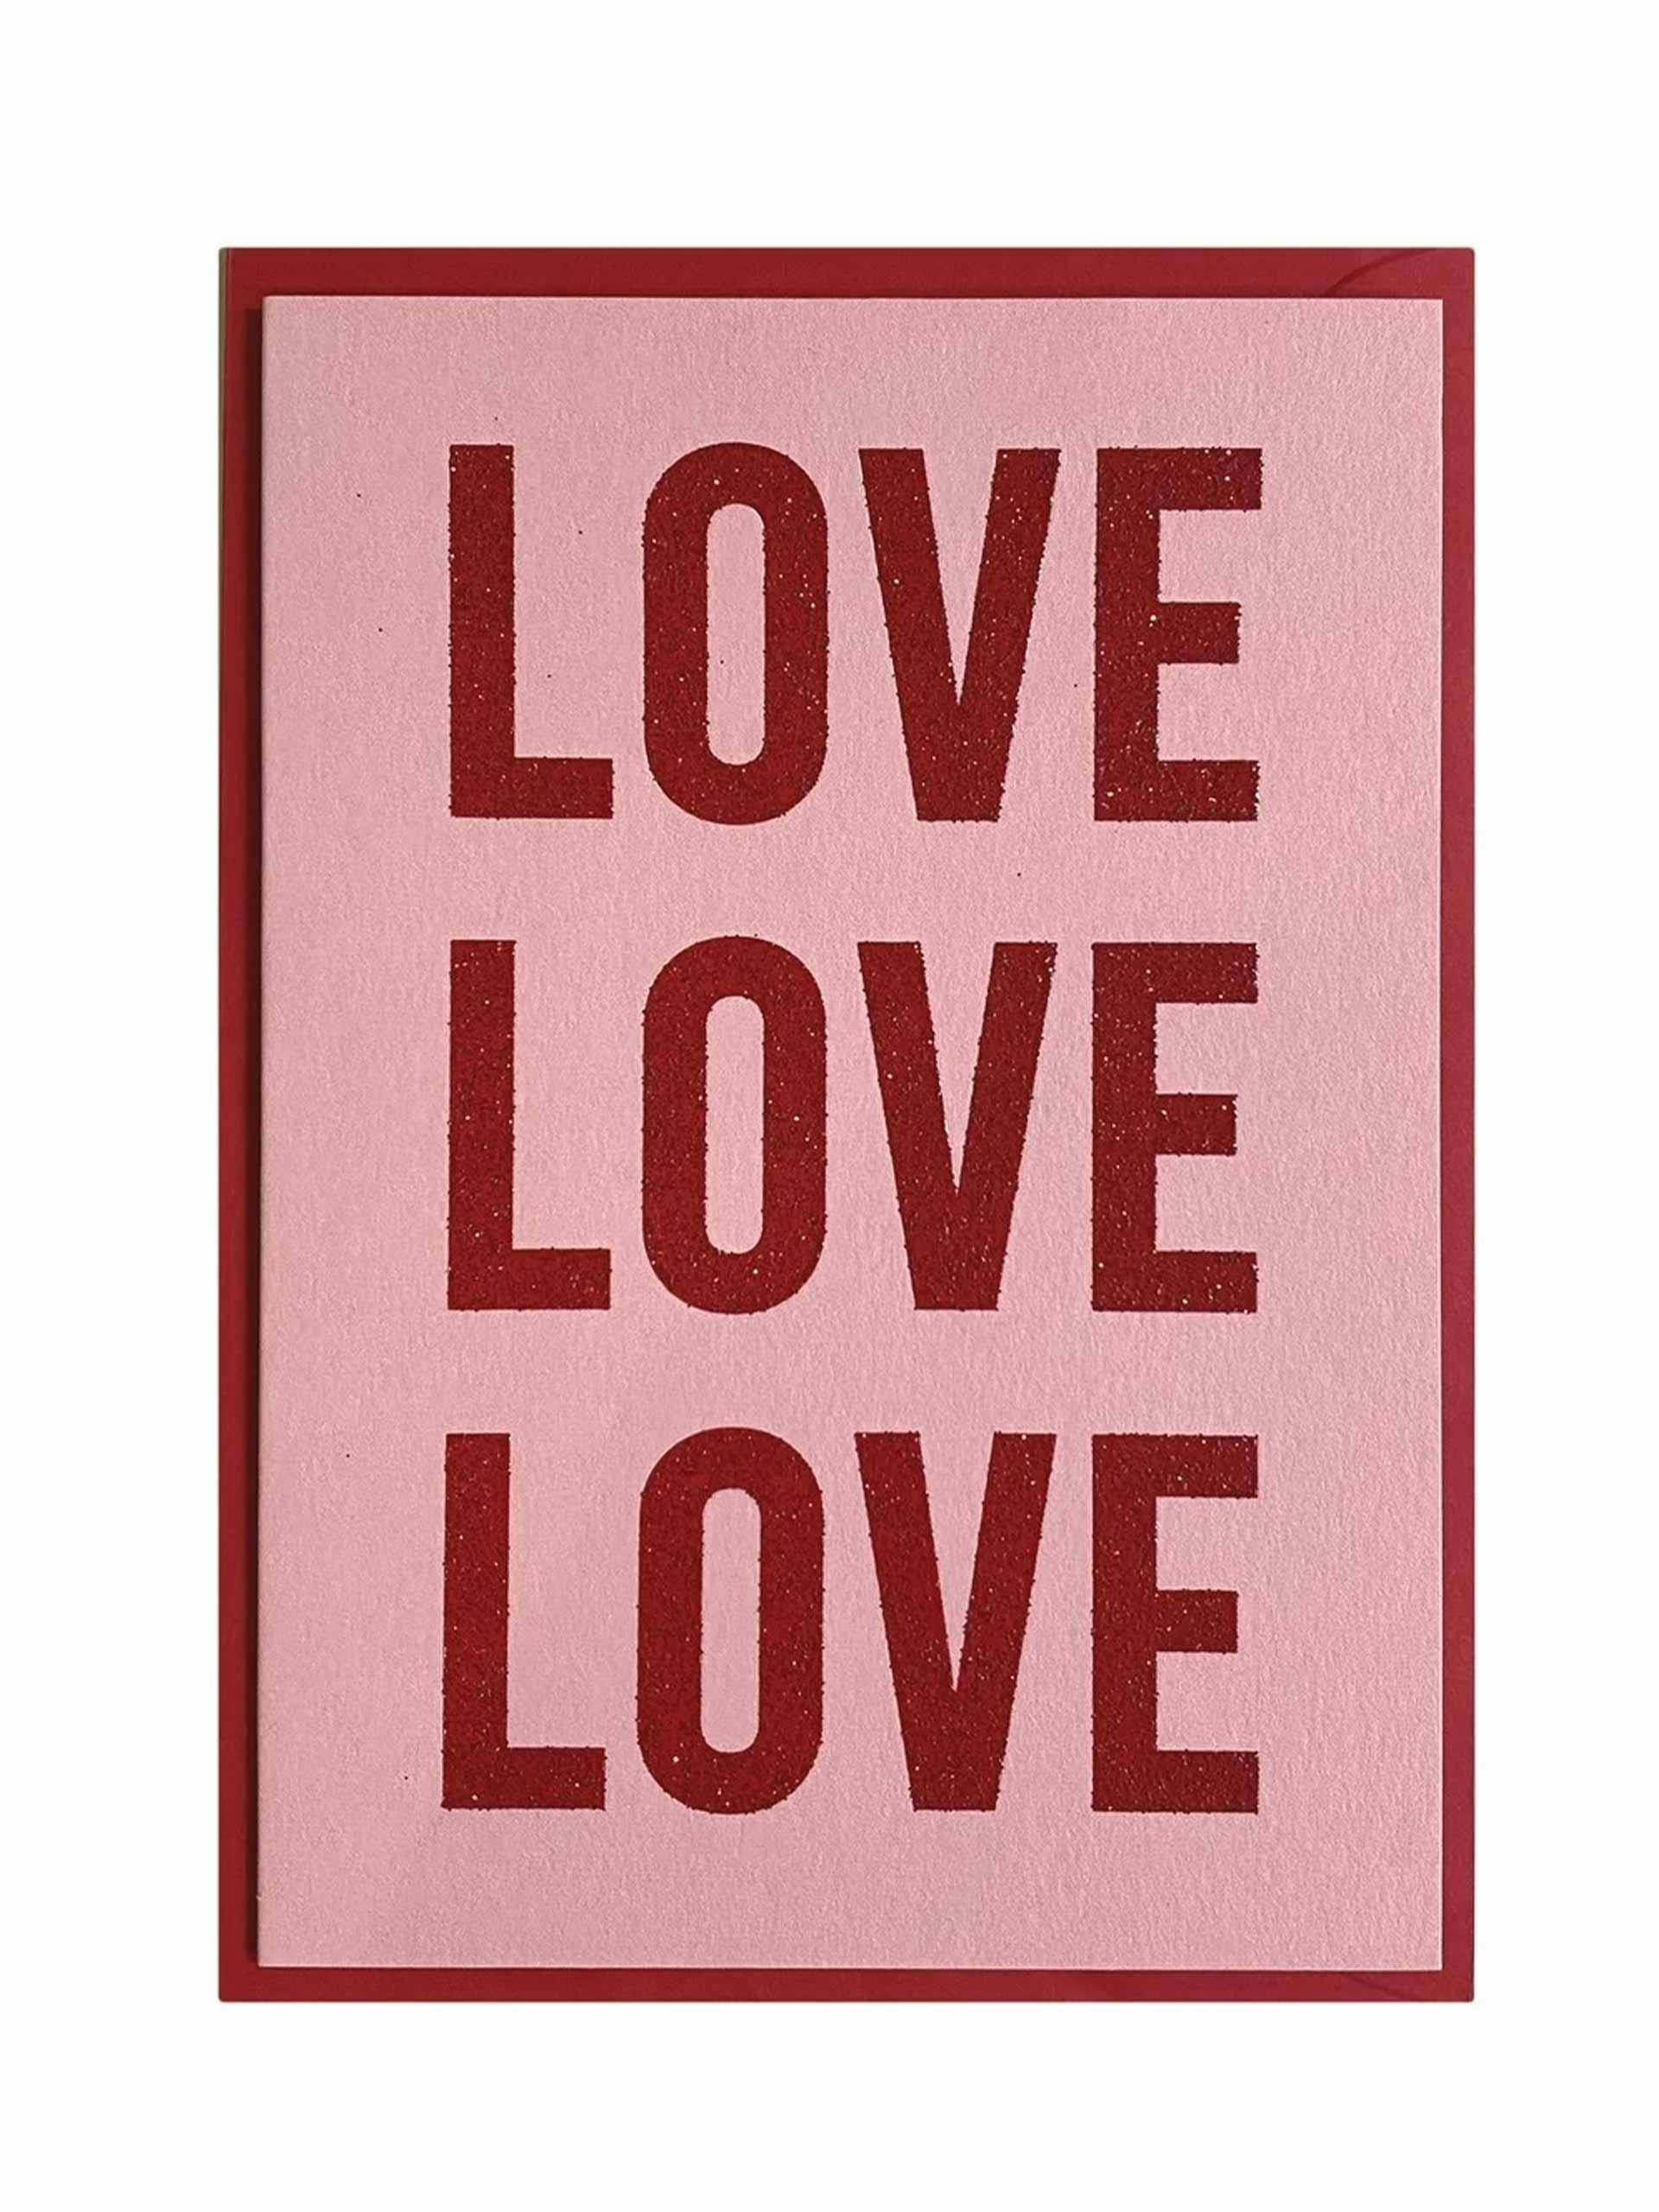 Love love love card